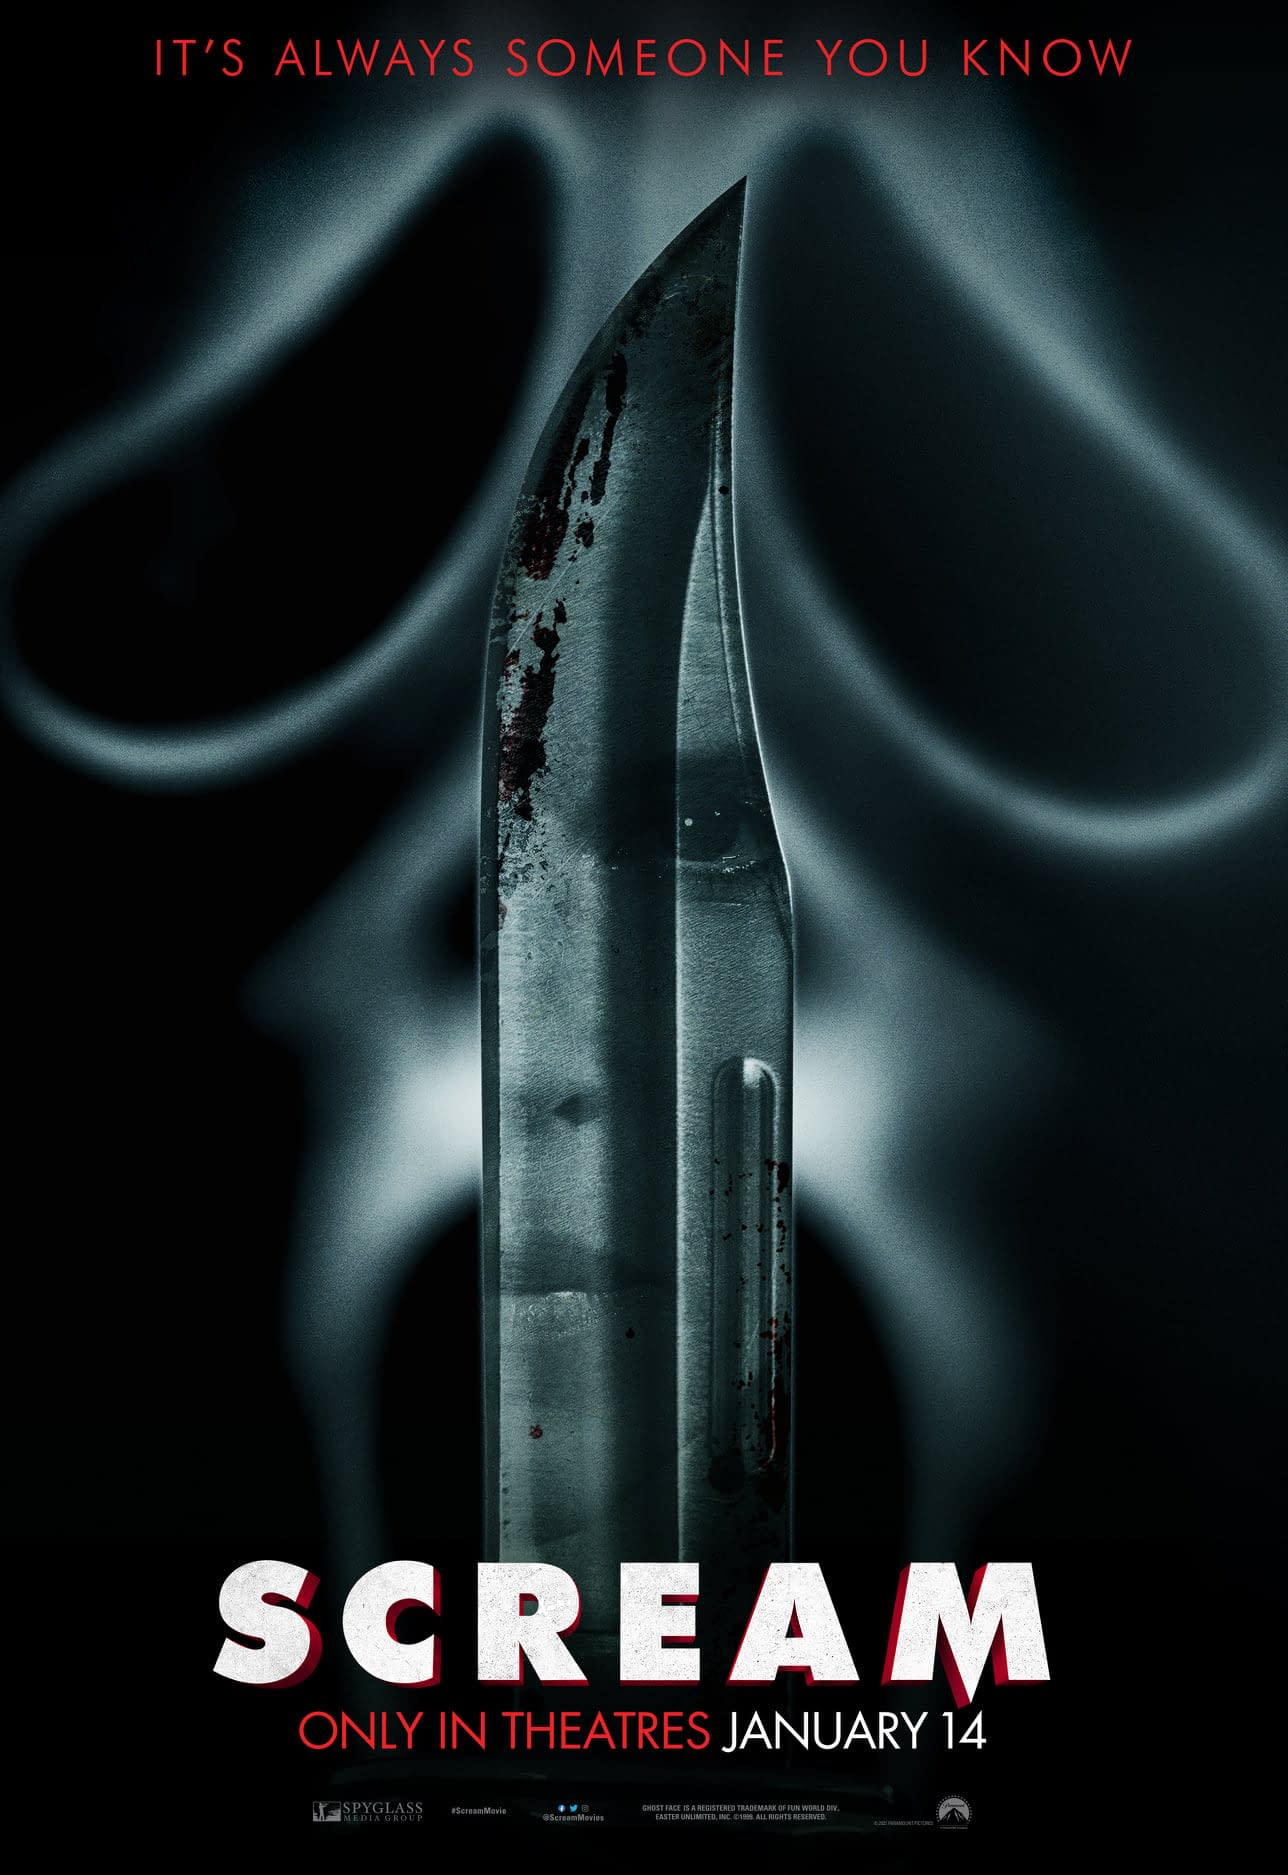 معرفی فیلم جیغ 2022 Scream: بازگشت فیلم ترسناک جیغ در پنجمین قسمت و قتل‌های سریالی معروف!